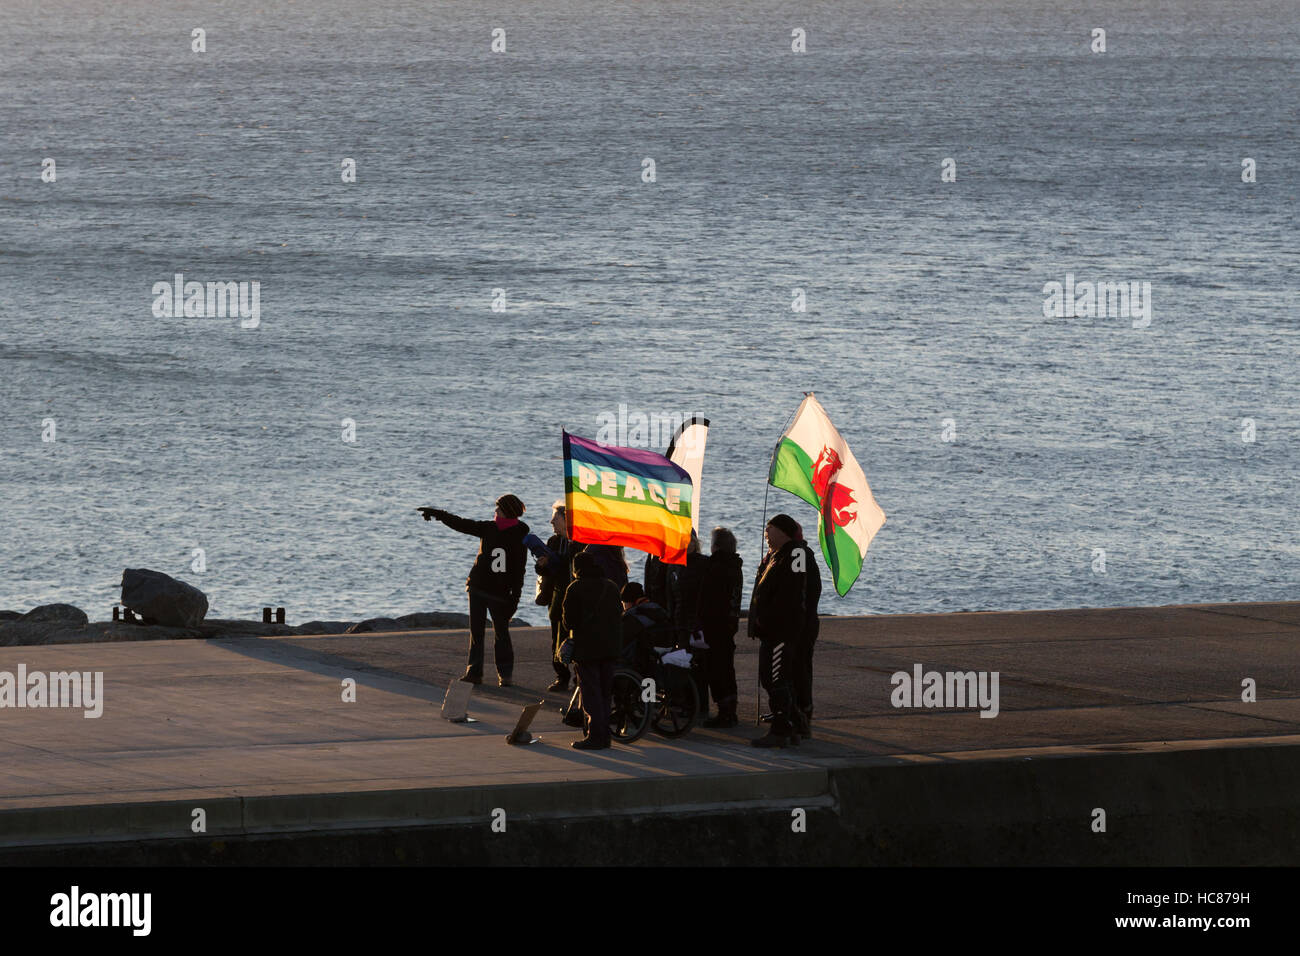 Un grupo de personas de pie en un embarcadero sujetando una bandera de paz y una bandera de Gales Foto de stock